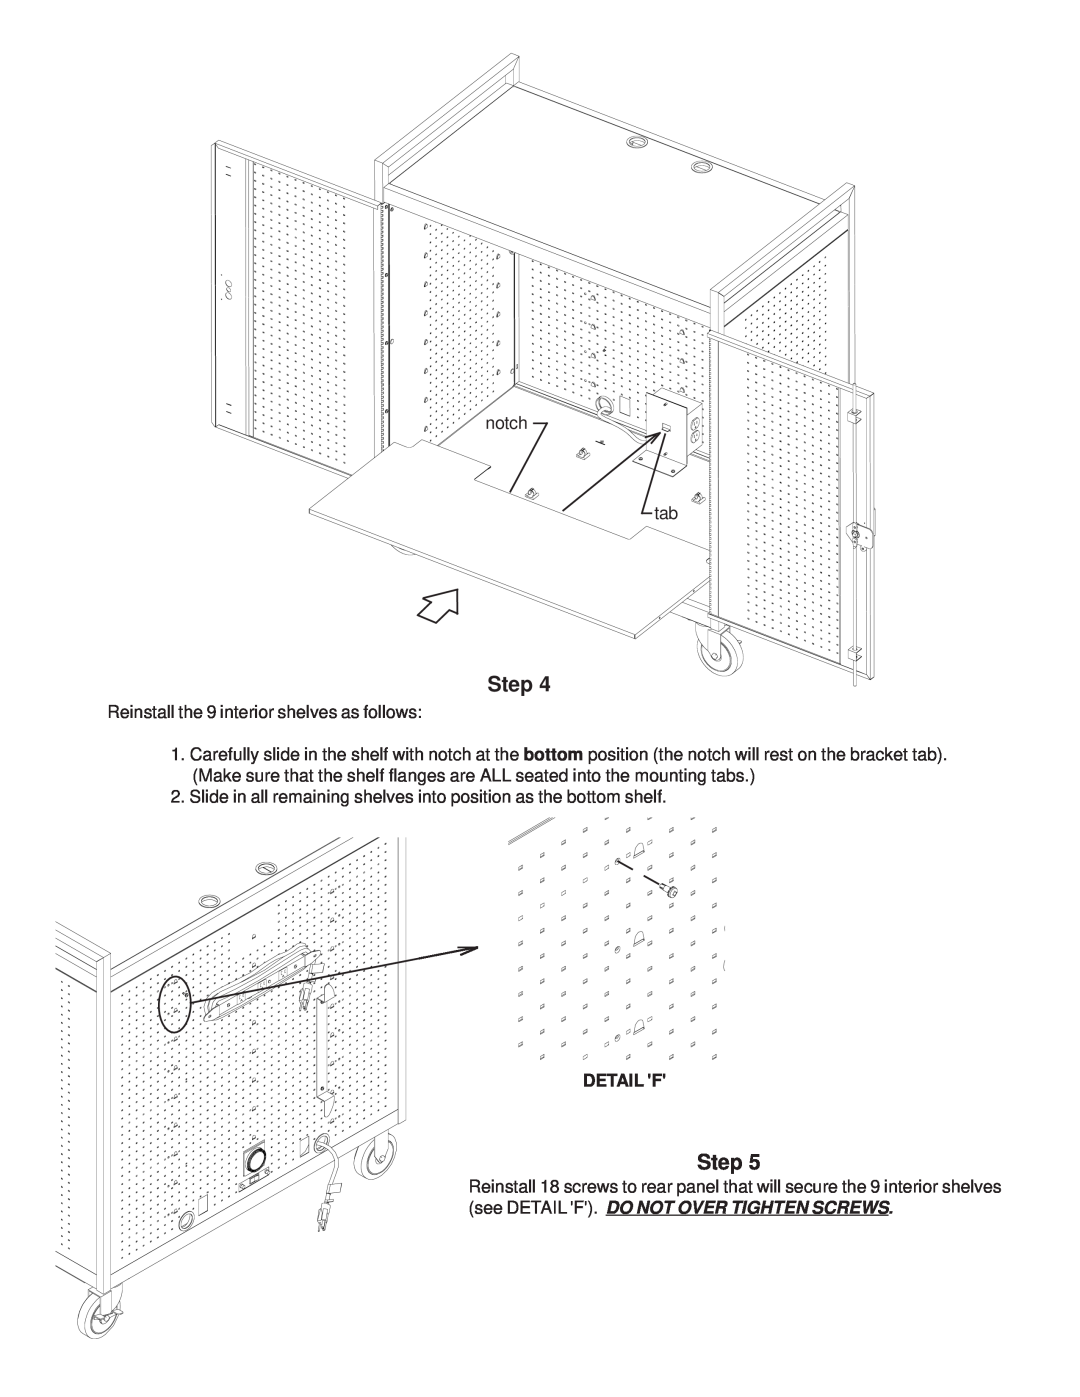 Bretford LAP30EULBA manual Step, Detail F 